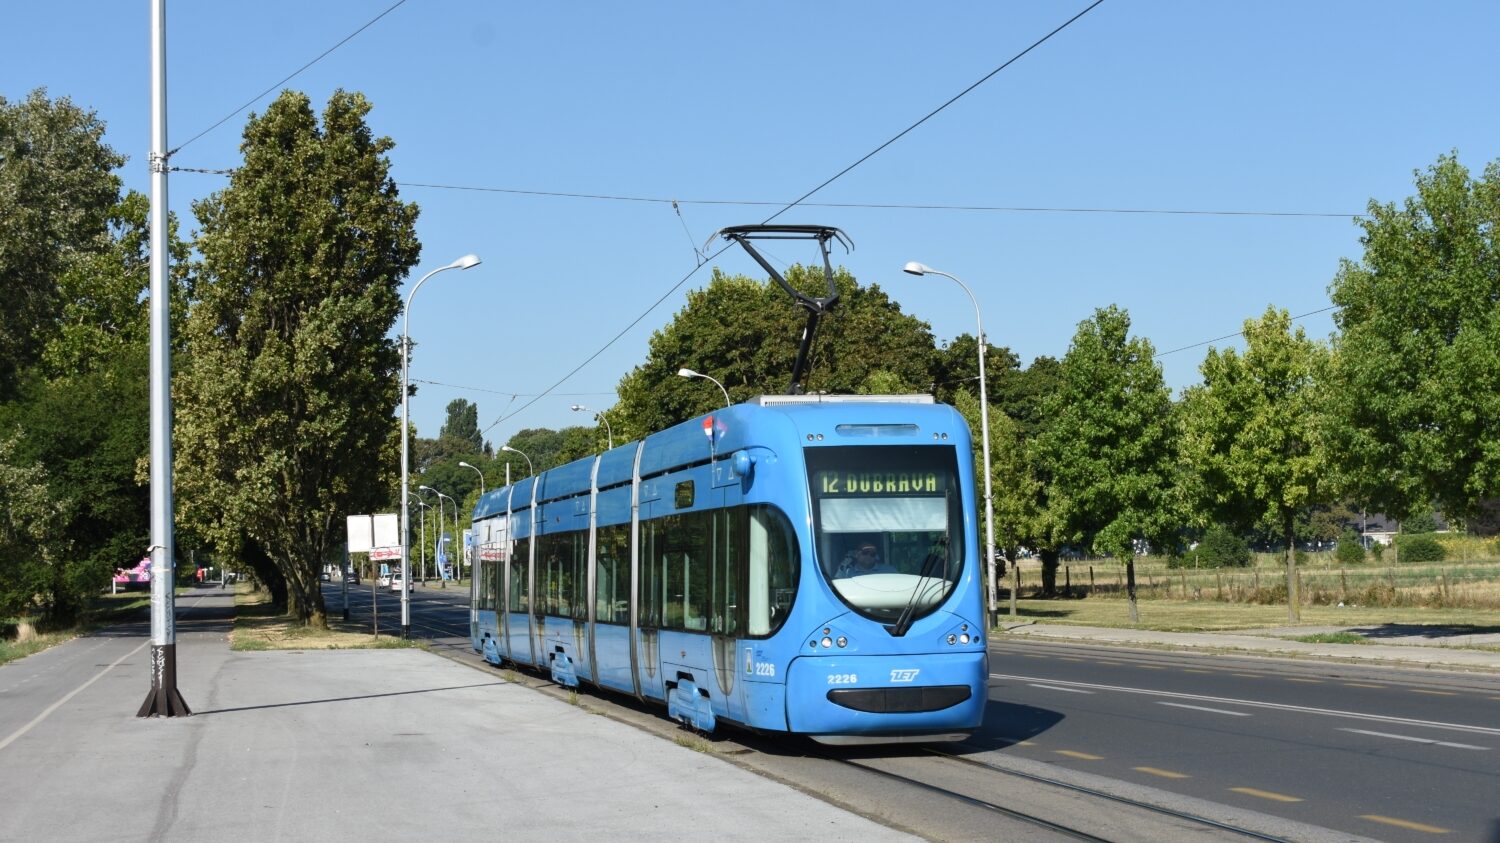 Řady tramvají z produkce Končaru se v chorvatské metropoli nejspíše rozšíří o 20 dalších vozů, avšak v kratší délkové modifikaci (21 m) než je vůz na snímku.(foto: Libor Hinčica)